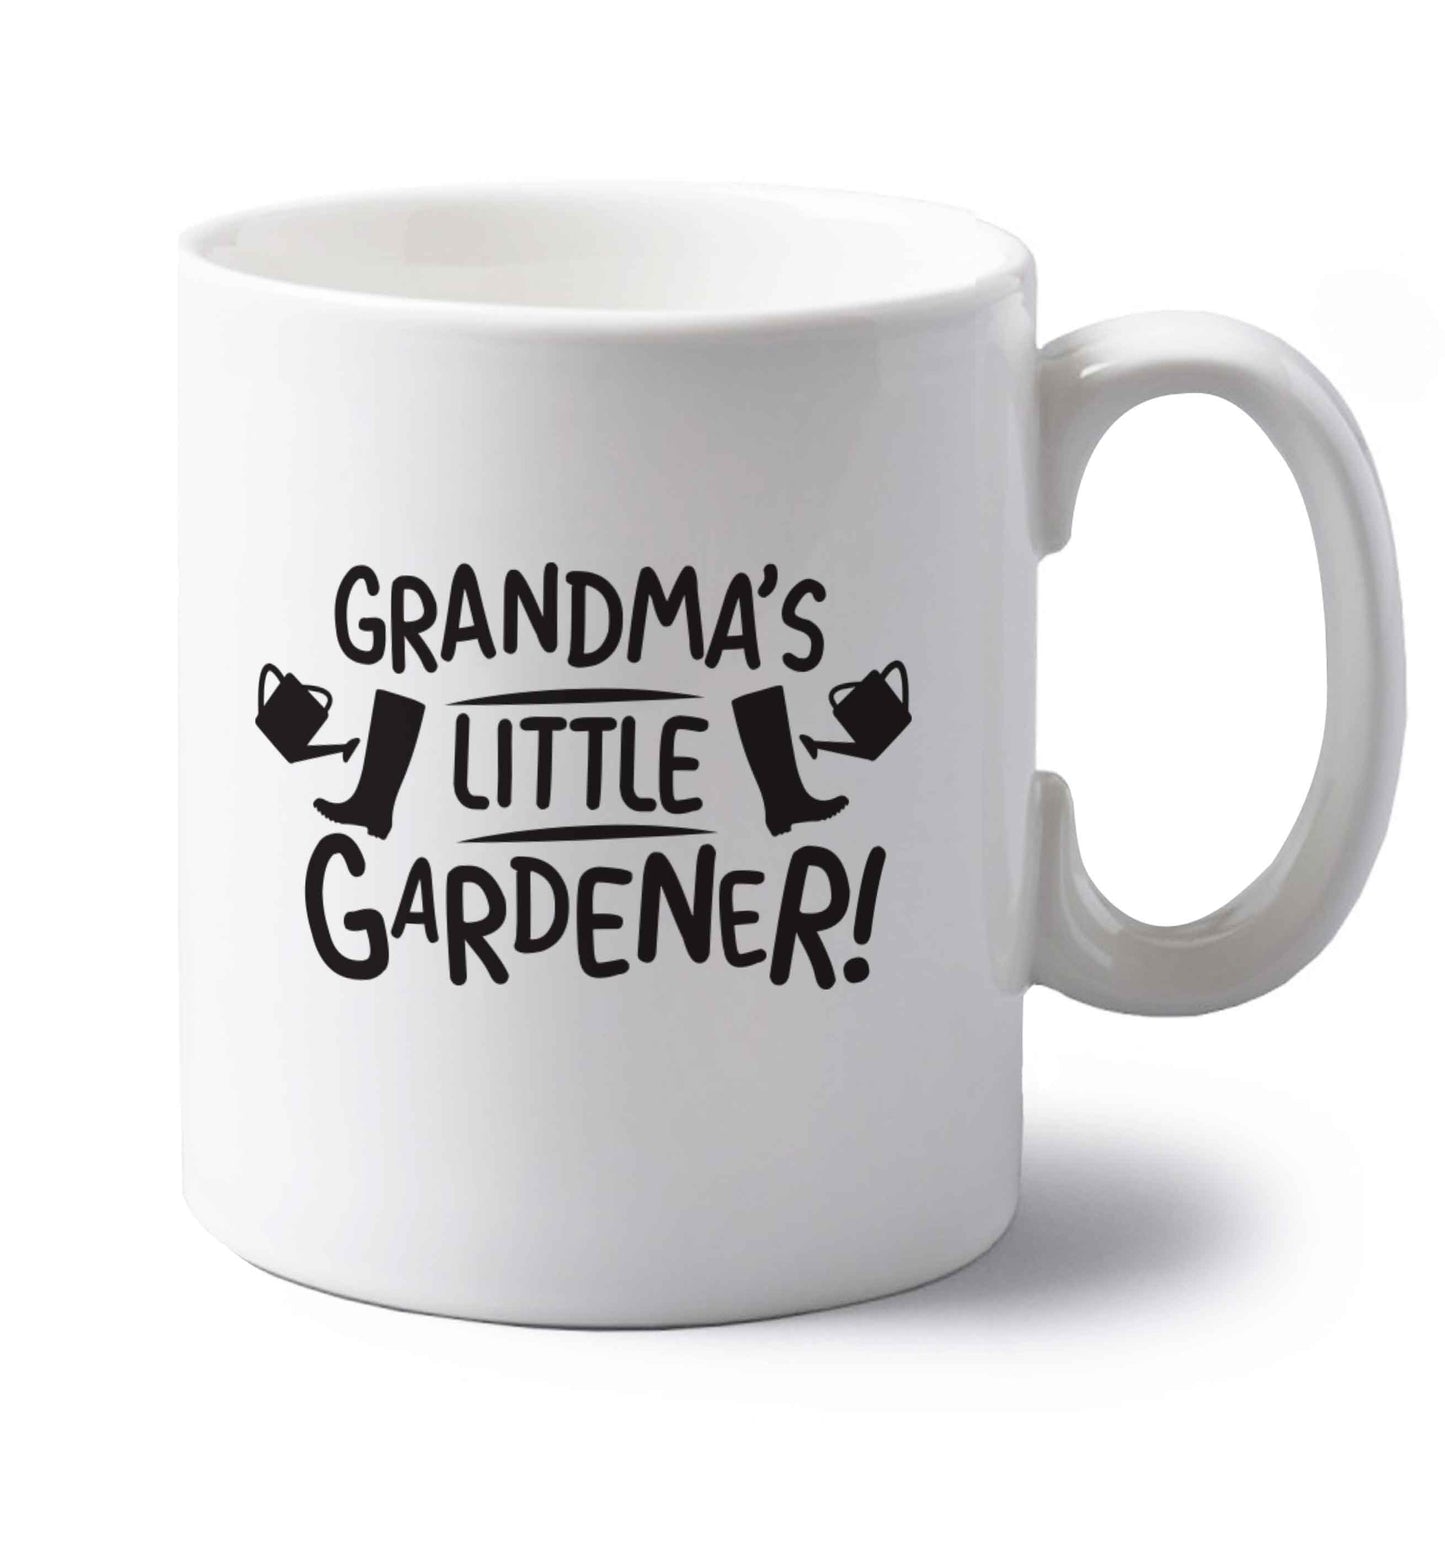 Grandma's little gardener left handed white ceramic mug 